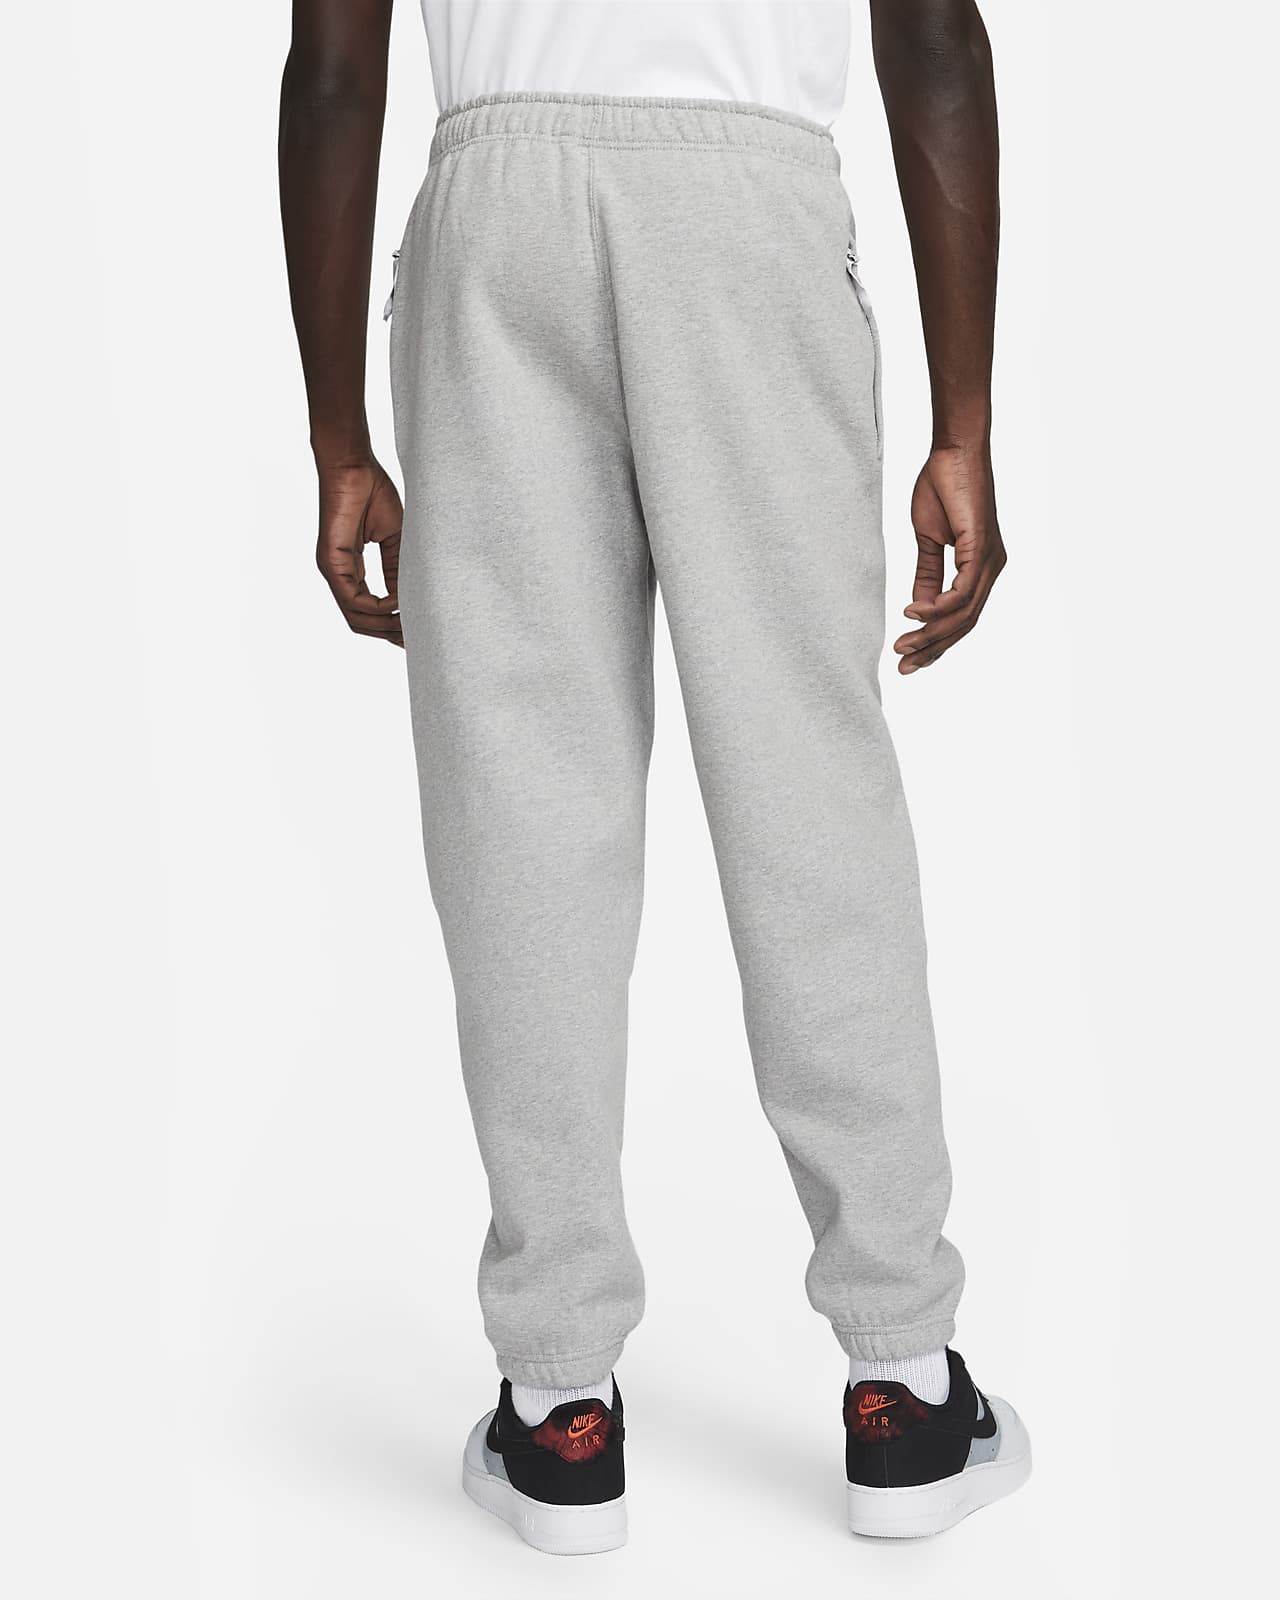 Pantalon survêtement Nike Solo Swoosh Men's Fleece Pants Grey